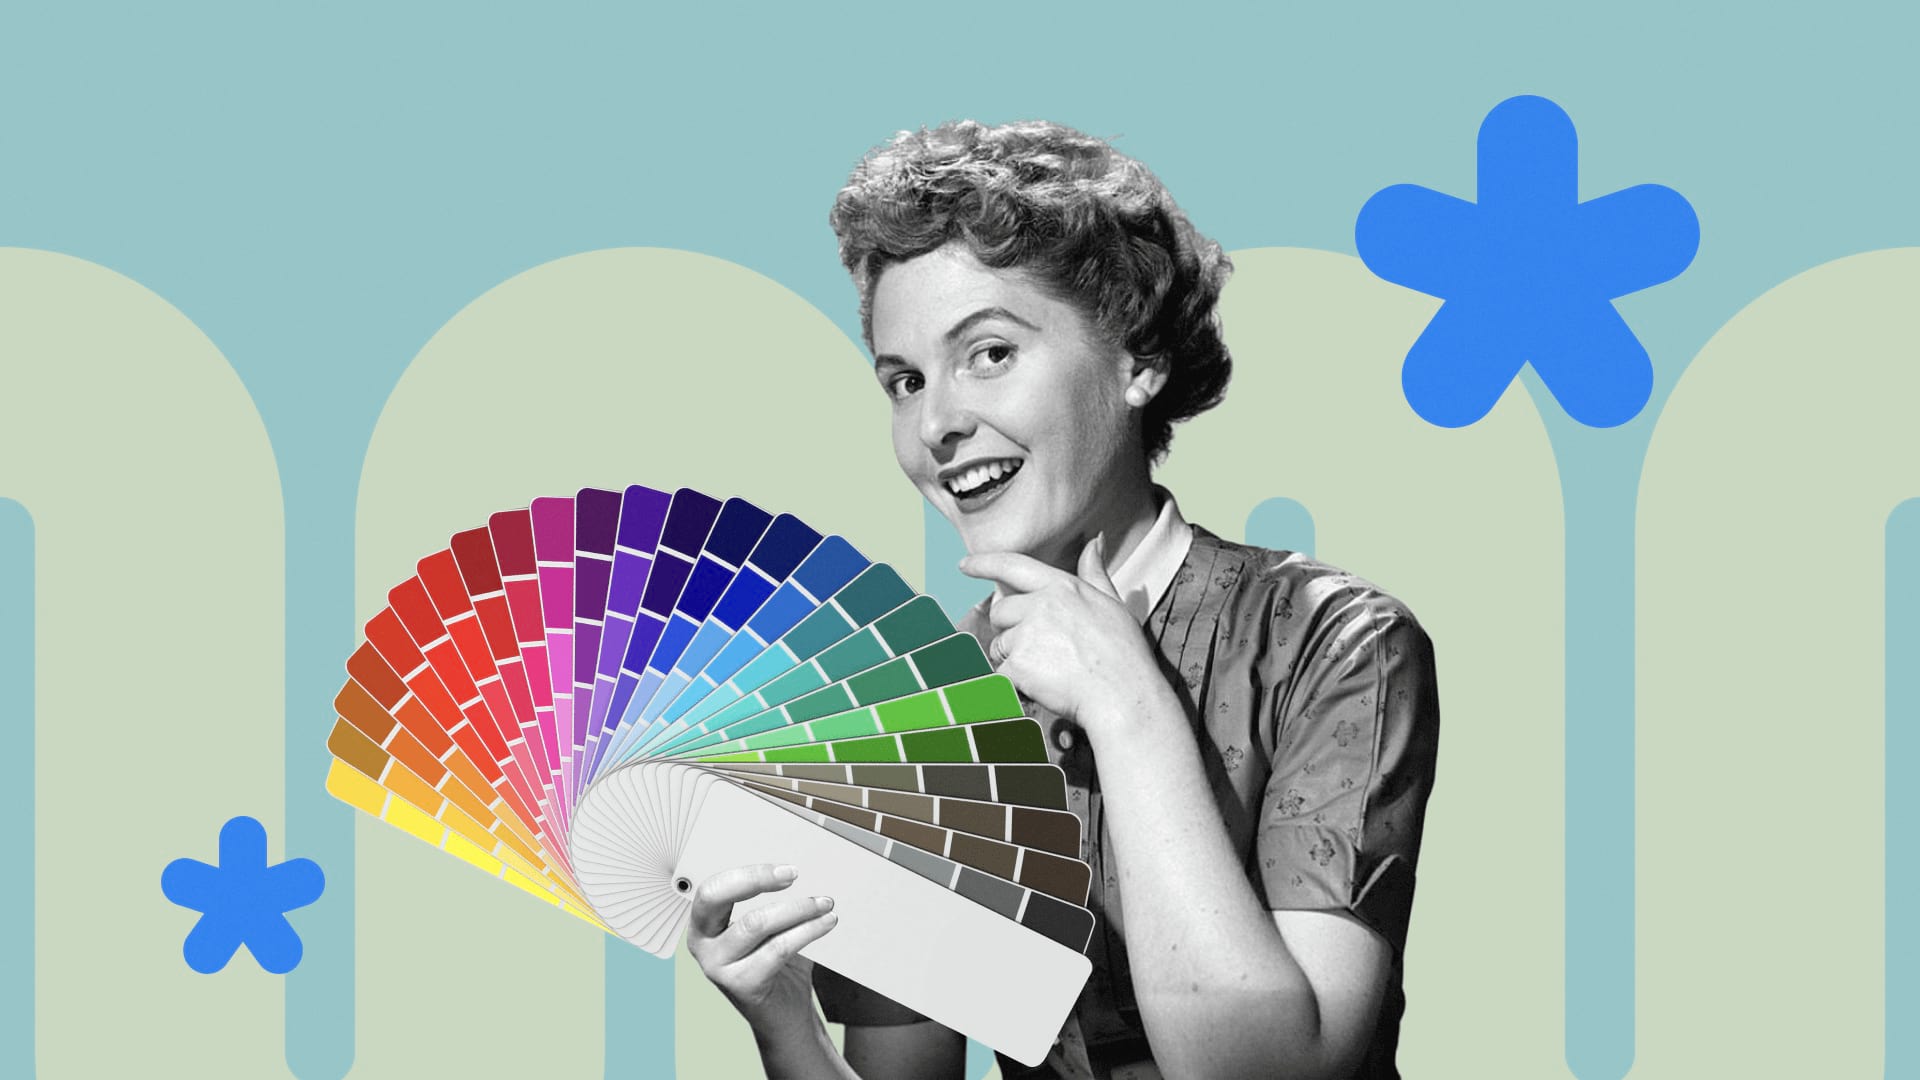 Цветовая палитра для Инстаграма – как ее создать с помощью шаблонов,сервисов и специалистов